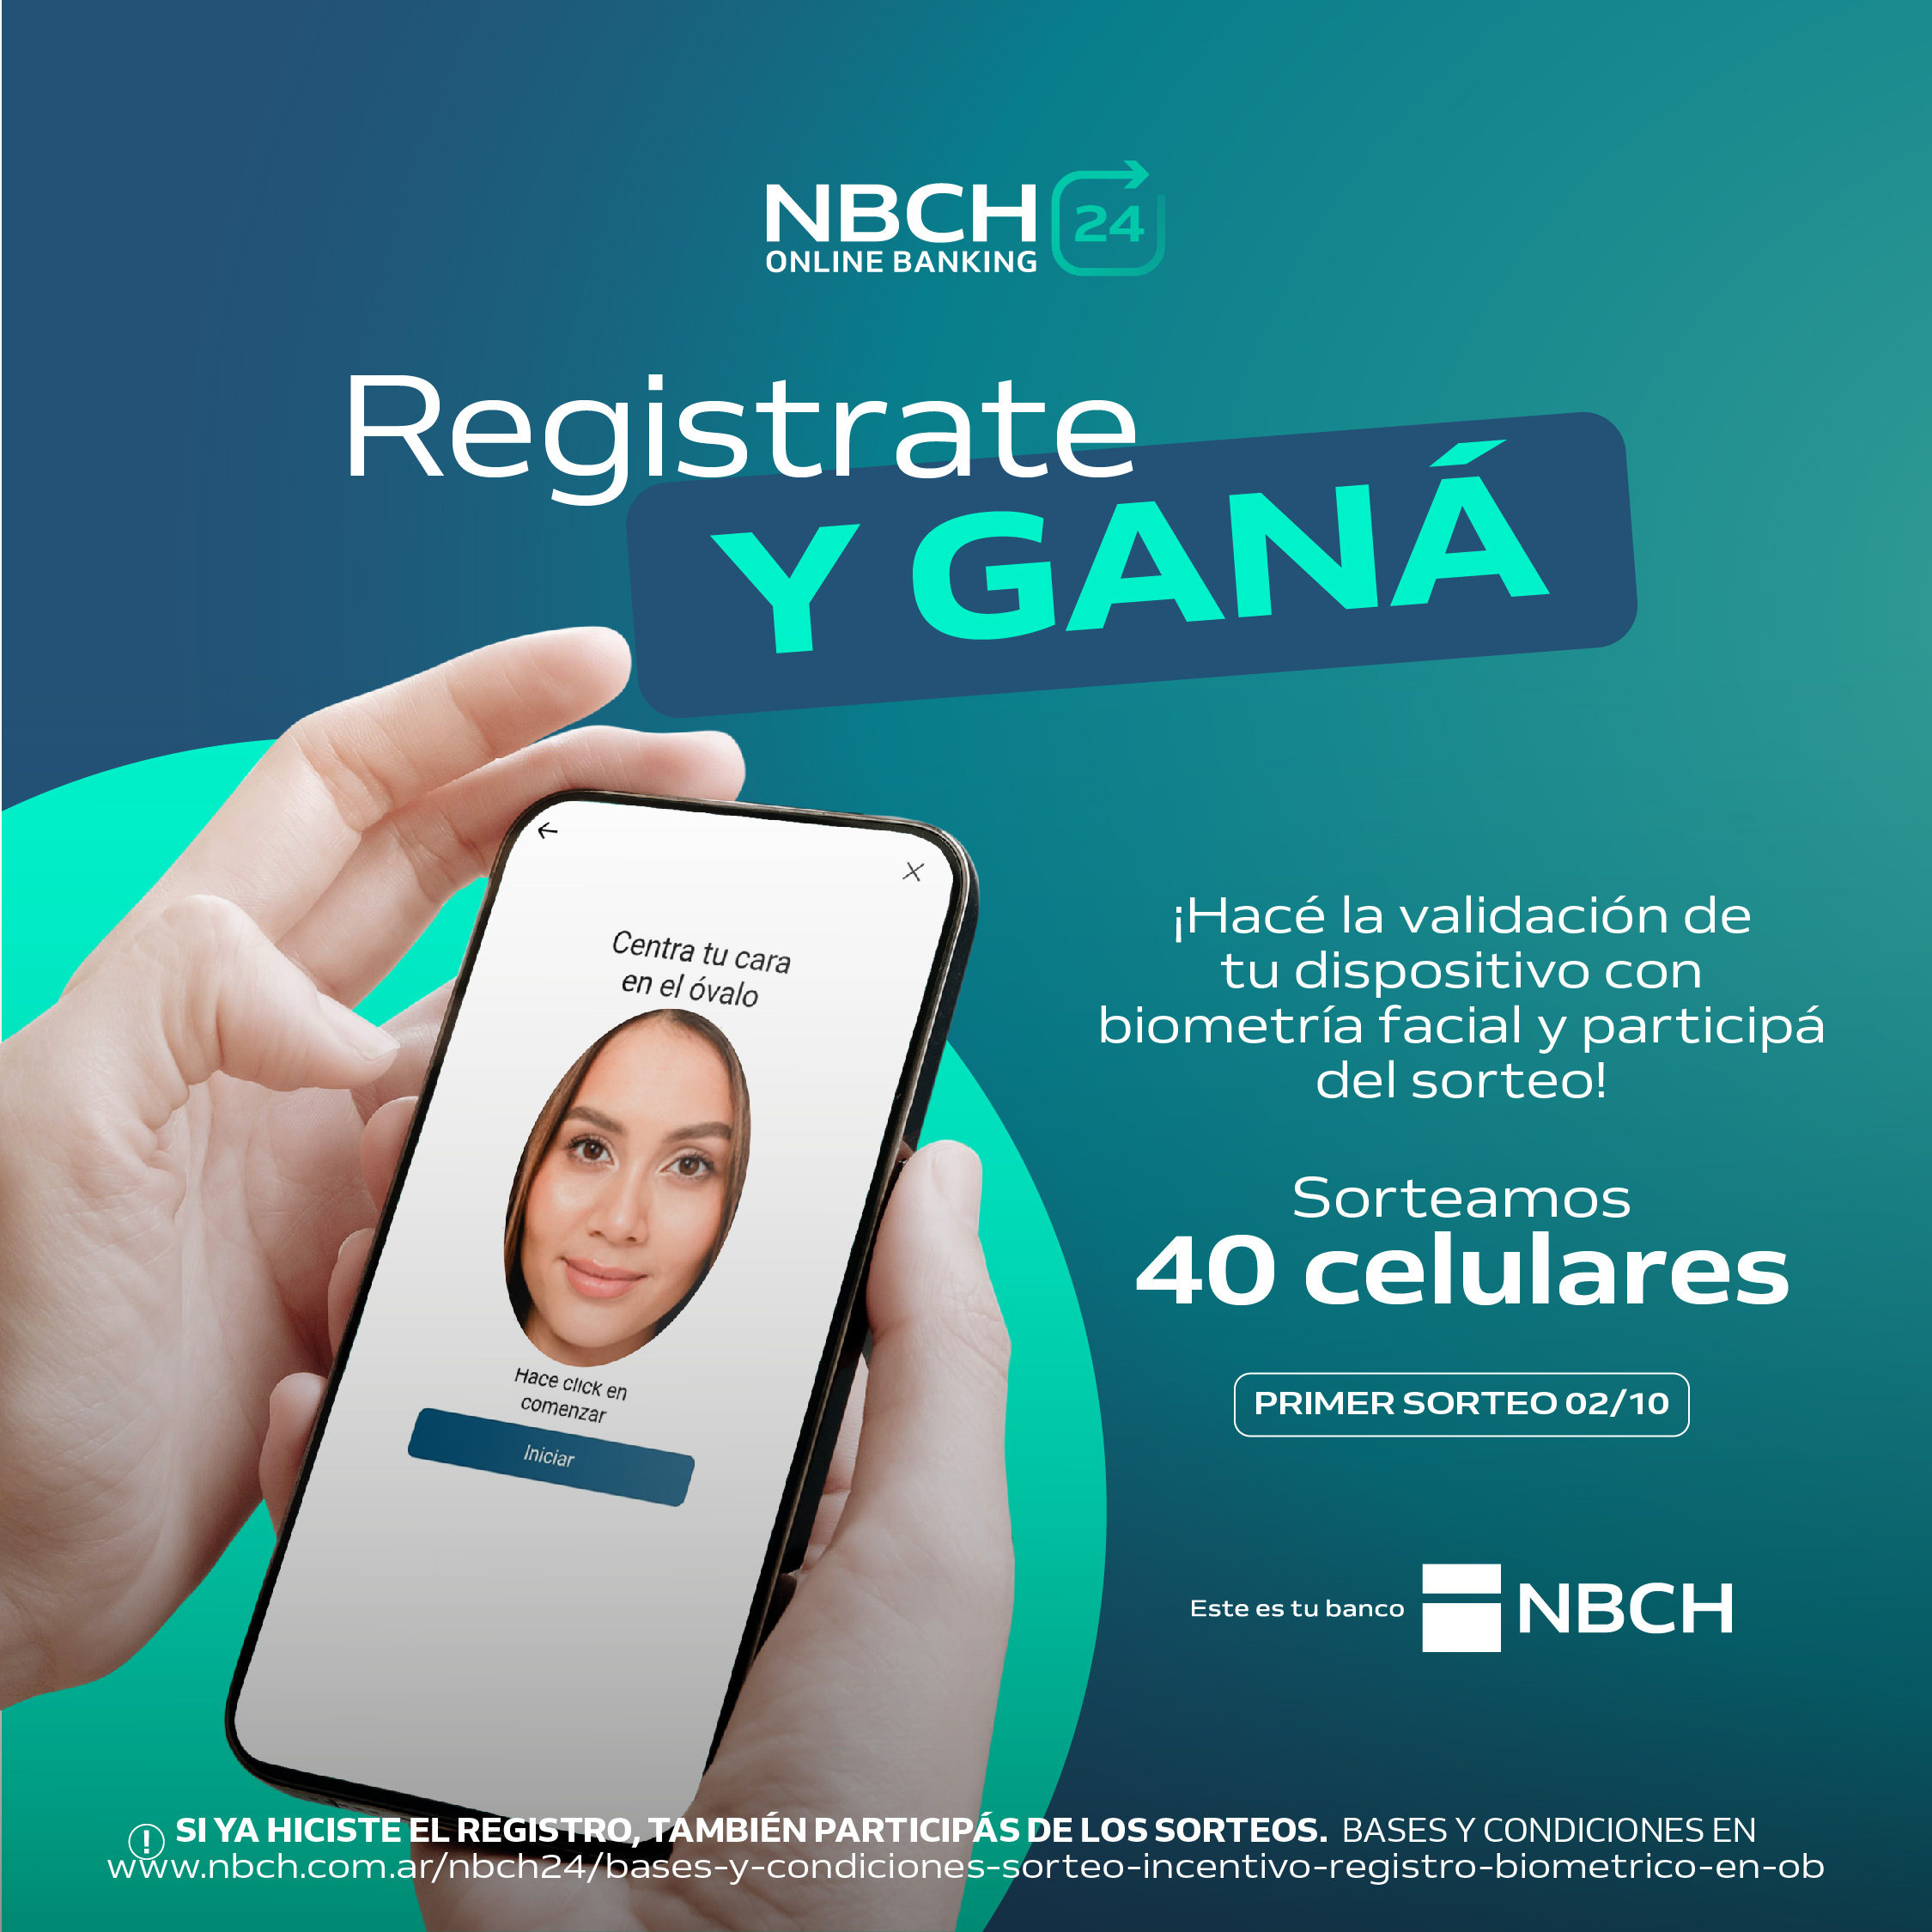 NBCH premia la seguridad con el registro biométrico en Online Banking